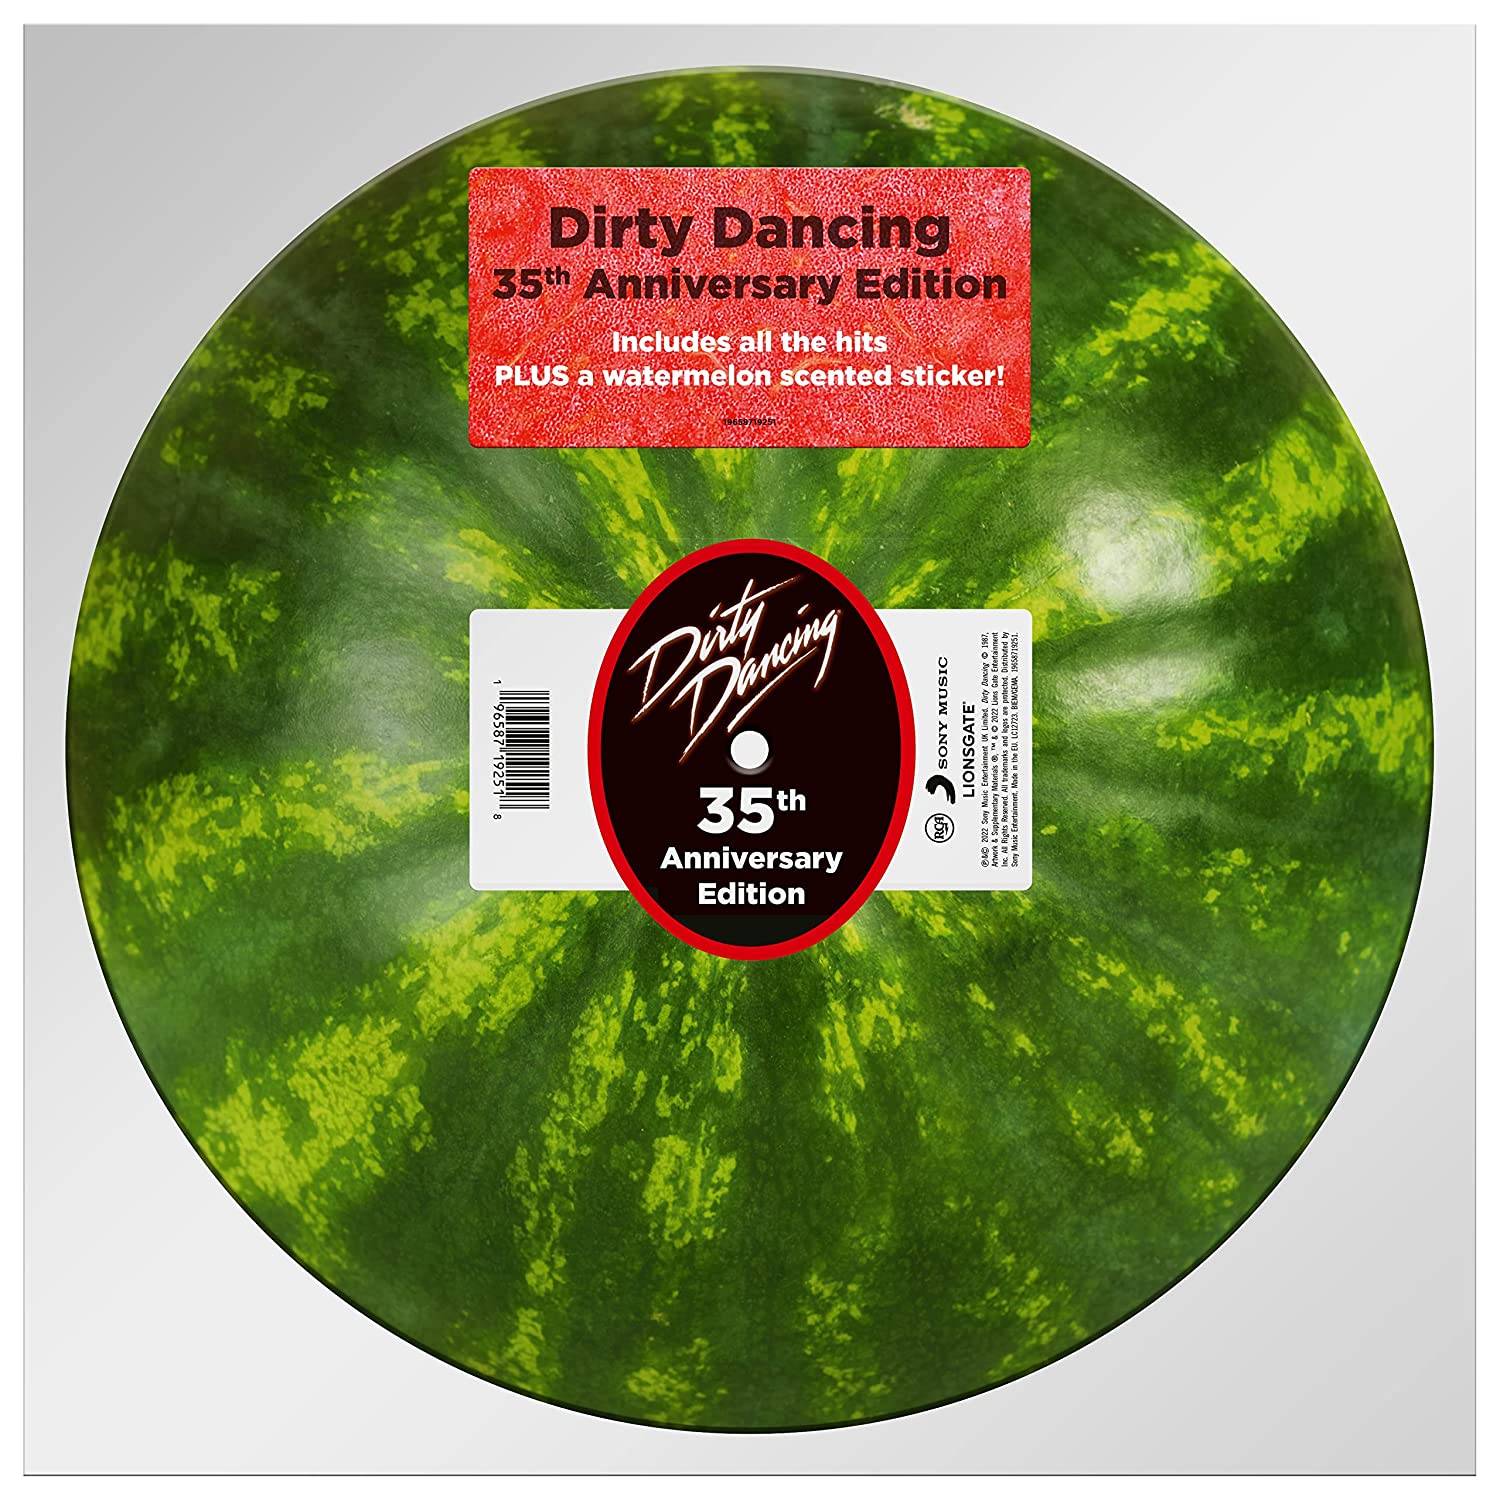 Саундтрек RCA Сборник - Dirty Dancing: 35th Anniversary Edition (Limited Picture Vinyl LP) одиссея капитана блада региональное издание